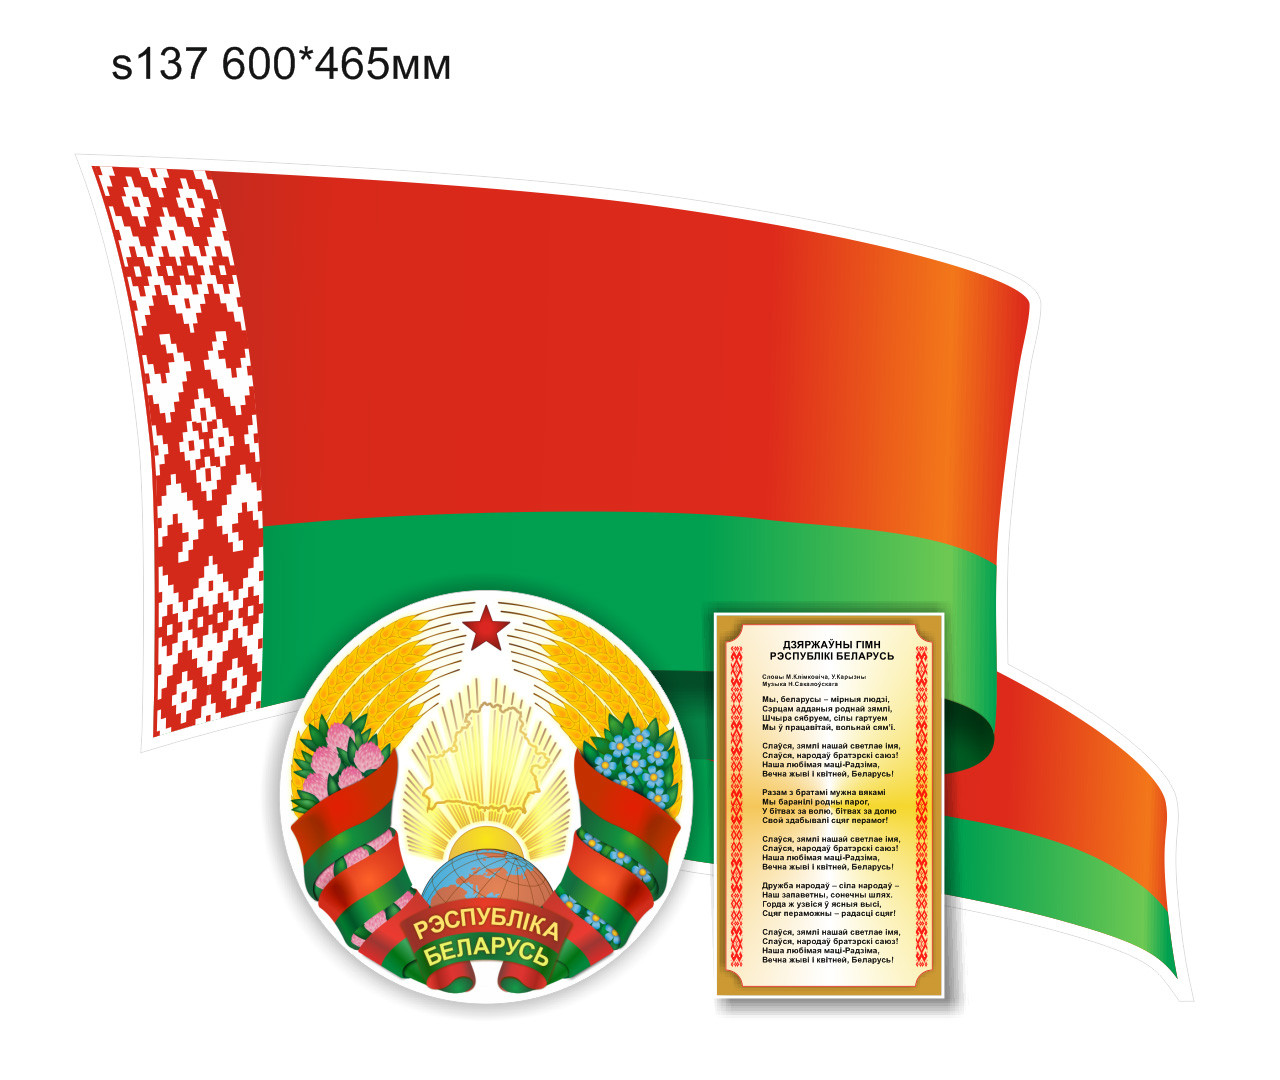 Стенд с символикой и гимном Республики Беларусь, с флагом и гербом. 600х465мм